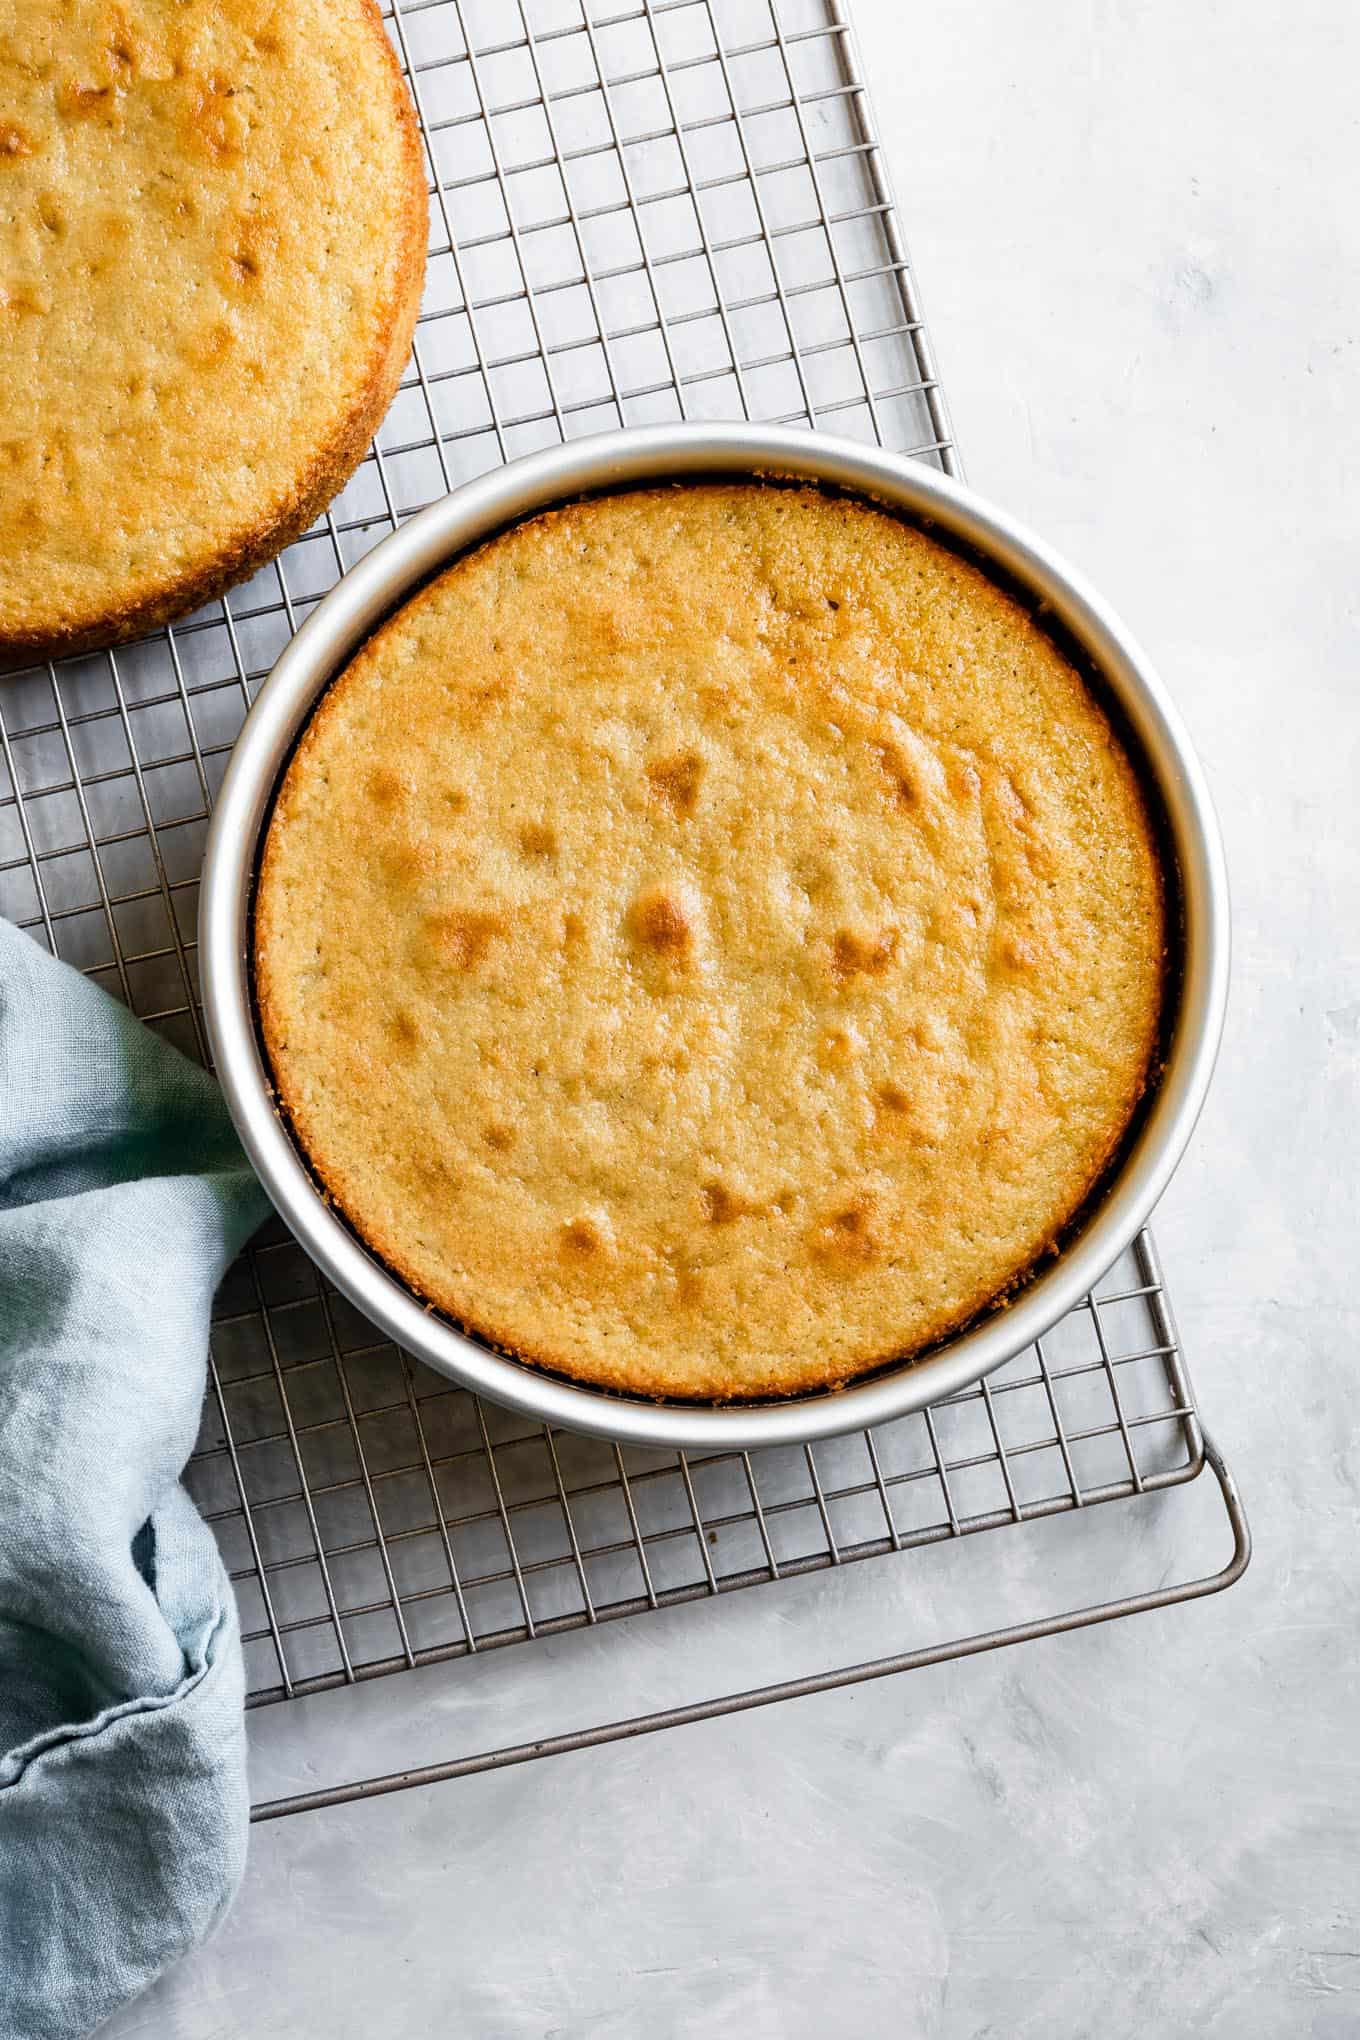 Gluten-free yellow cake recipe